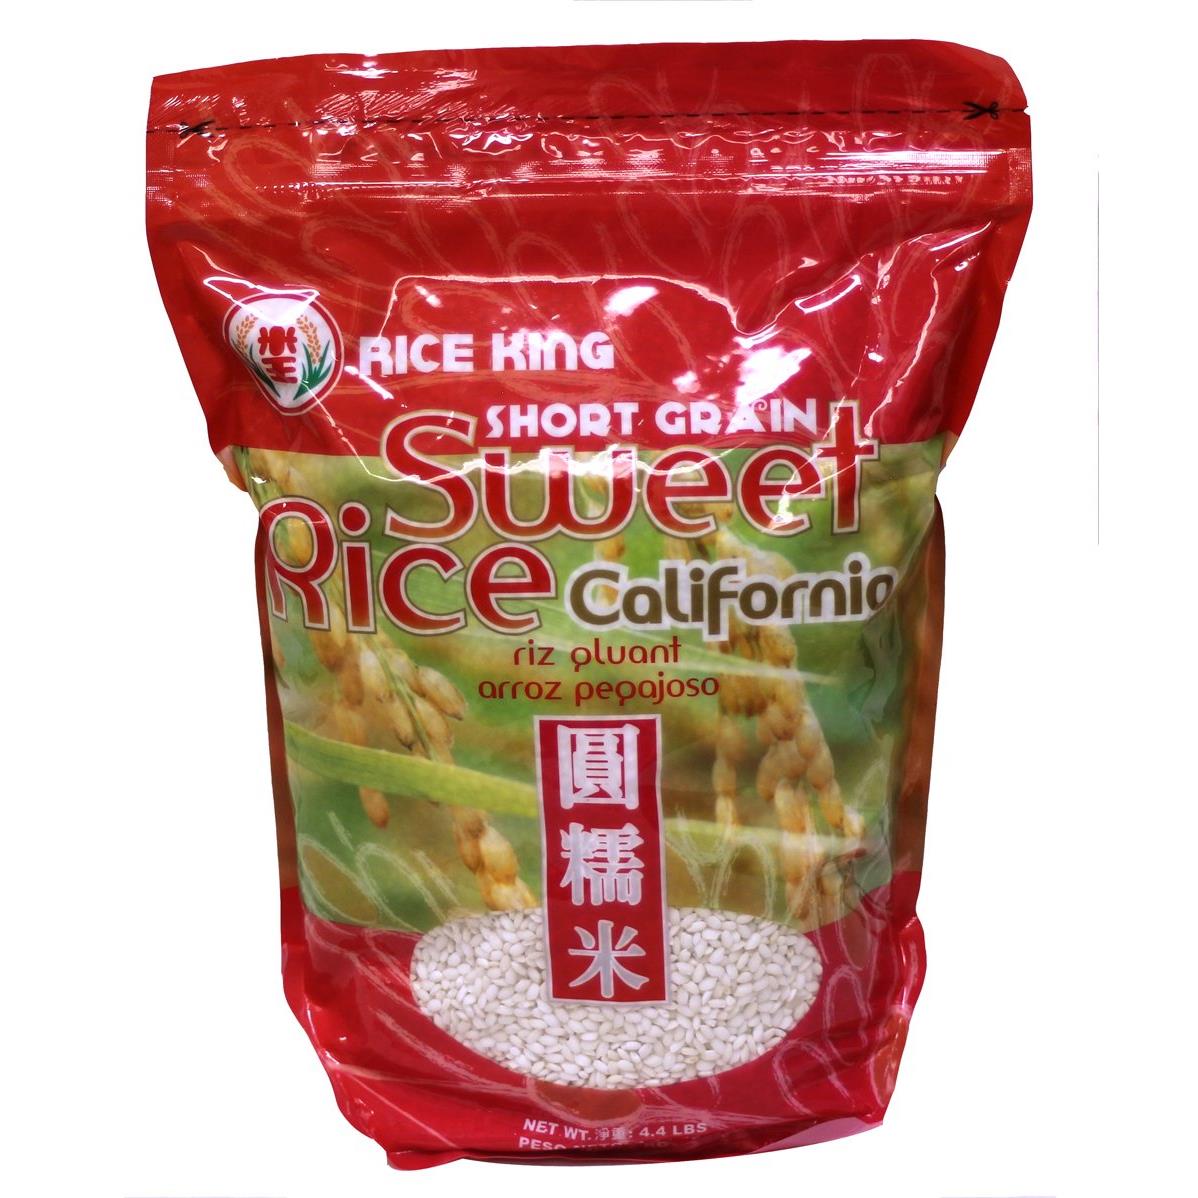 圆糯米 Sweet Rice California Short Grain (Arroz Peqajoso) - 4.4 Lbs